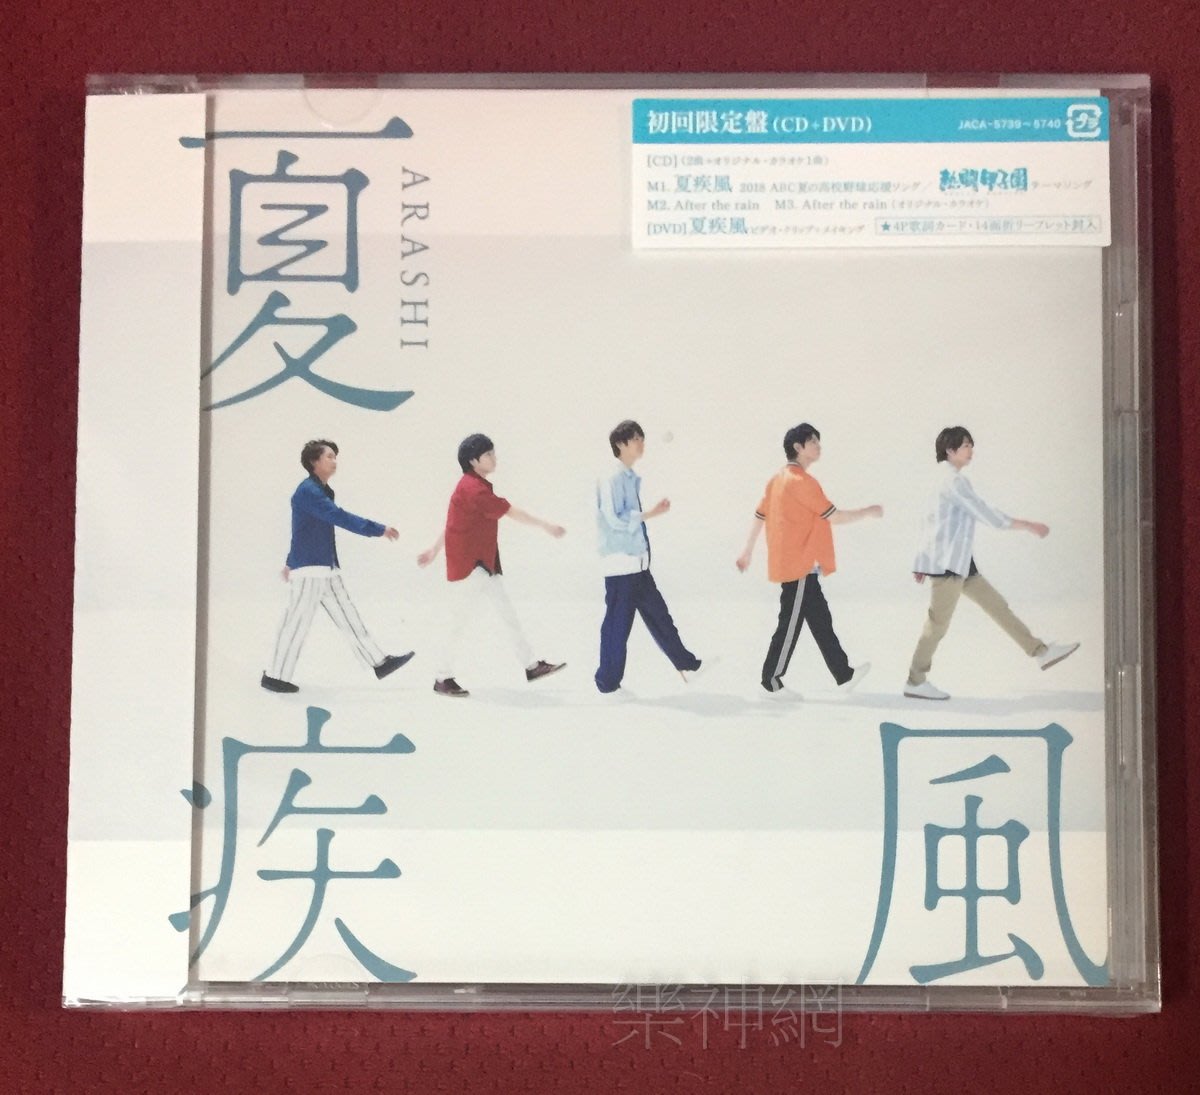 嵐arashi 相葉雅紀熱闘甲子園主題曲夏疾風 日版初回cd Dvd限定盤 全新 Yahoo奇摩拍賣